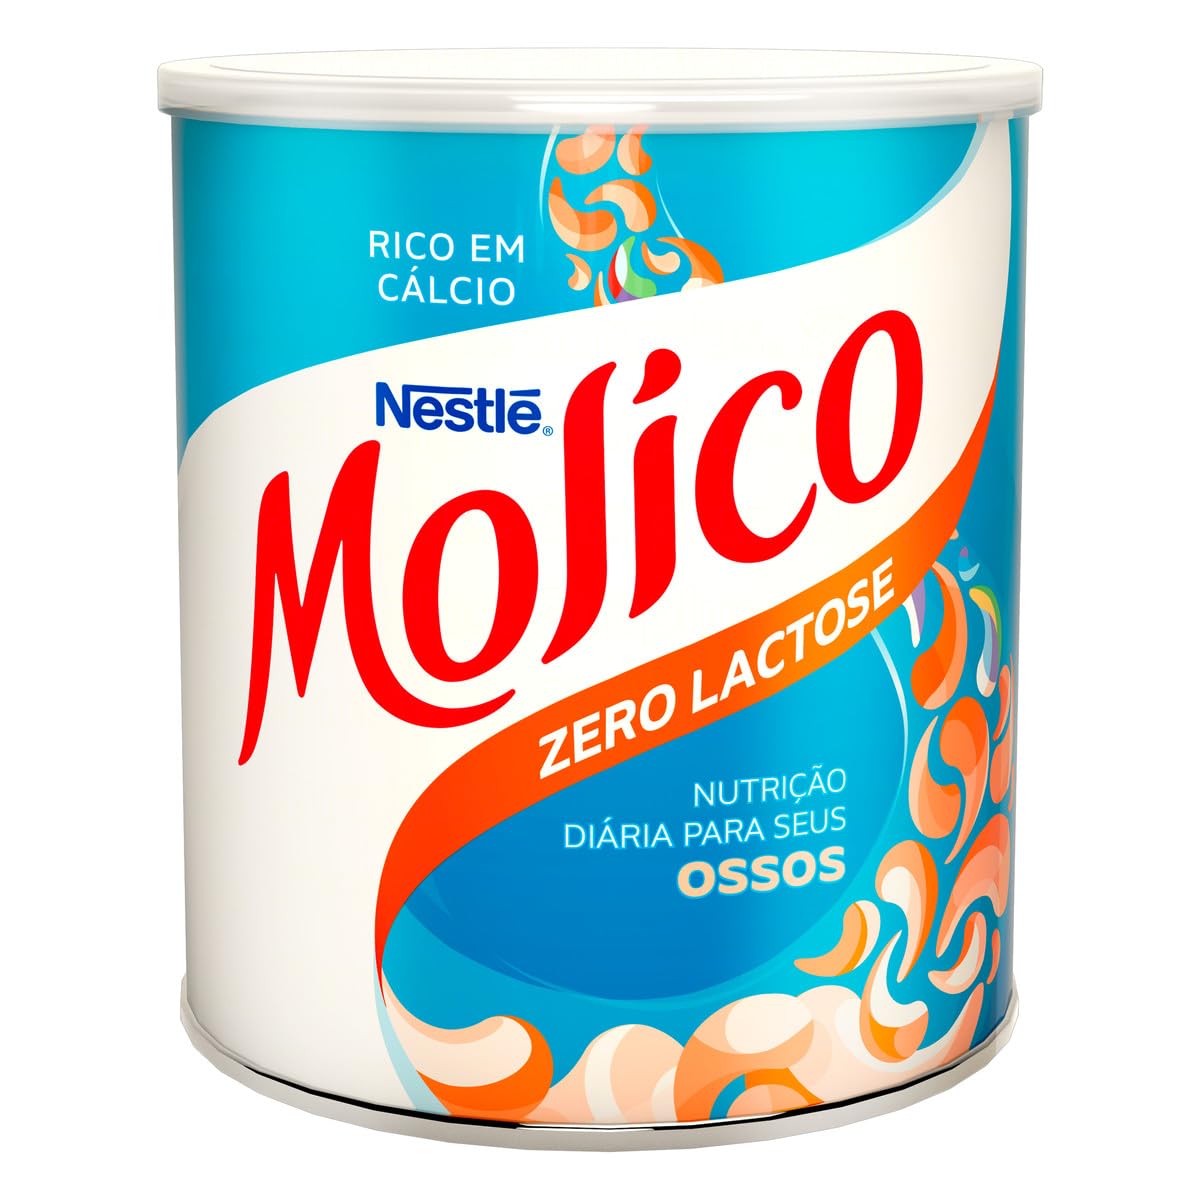 Nestlé Molico, Nutrição Diária para Seus Ossos, 260g